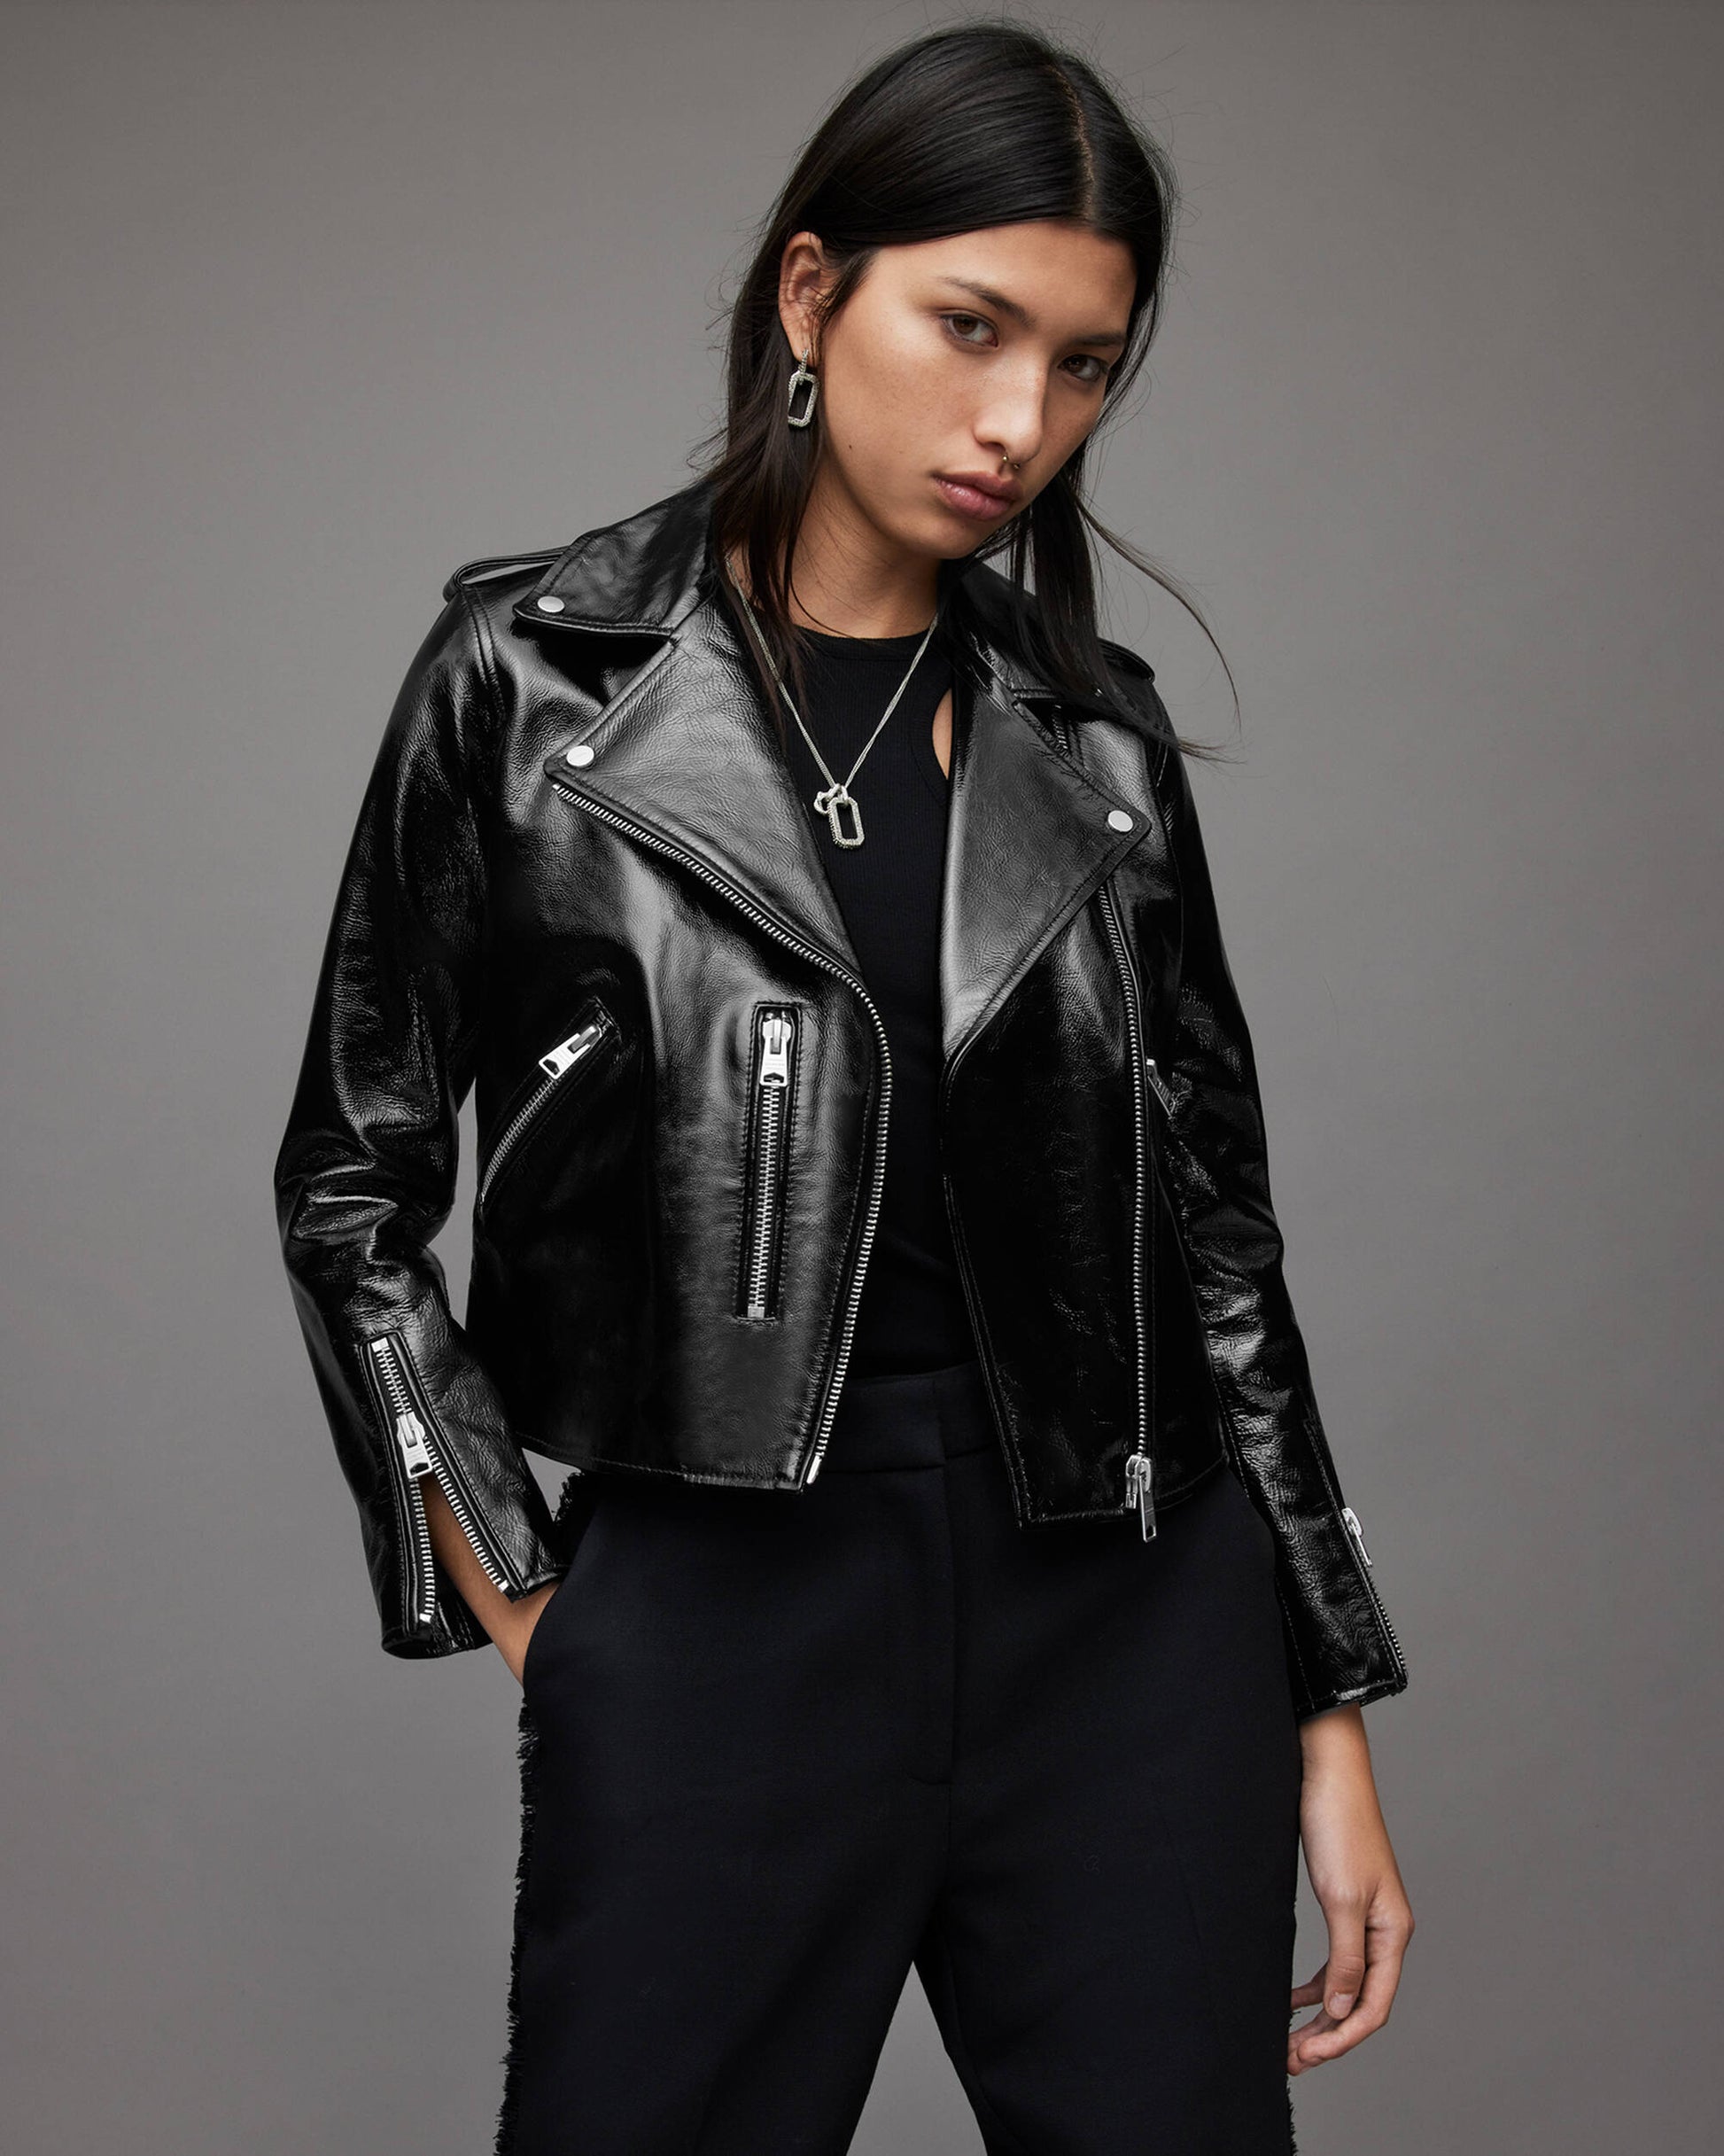 Women's Black Biker Leather Jacket With Shoulder Straps